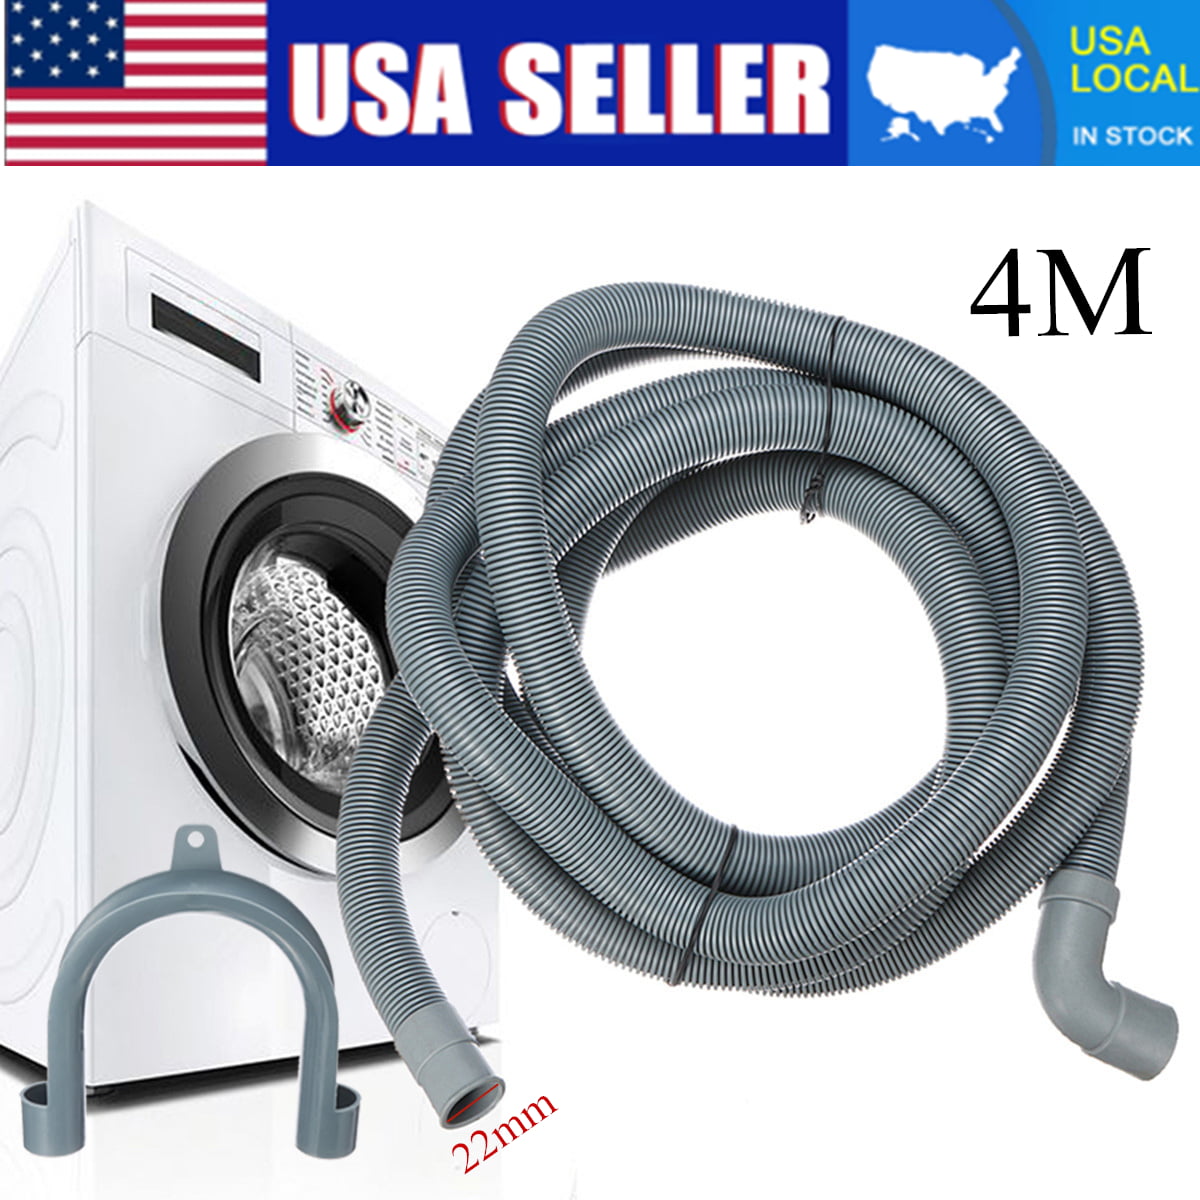 4M Universal Washing Machine Dishwasher Drain Outlet Hose Pipe Extension Kit 